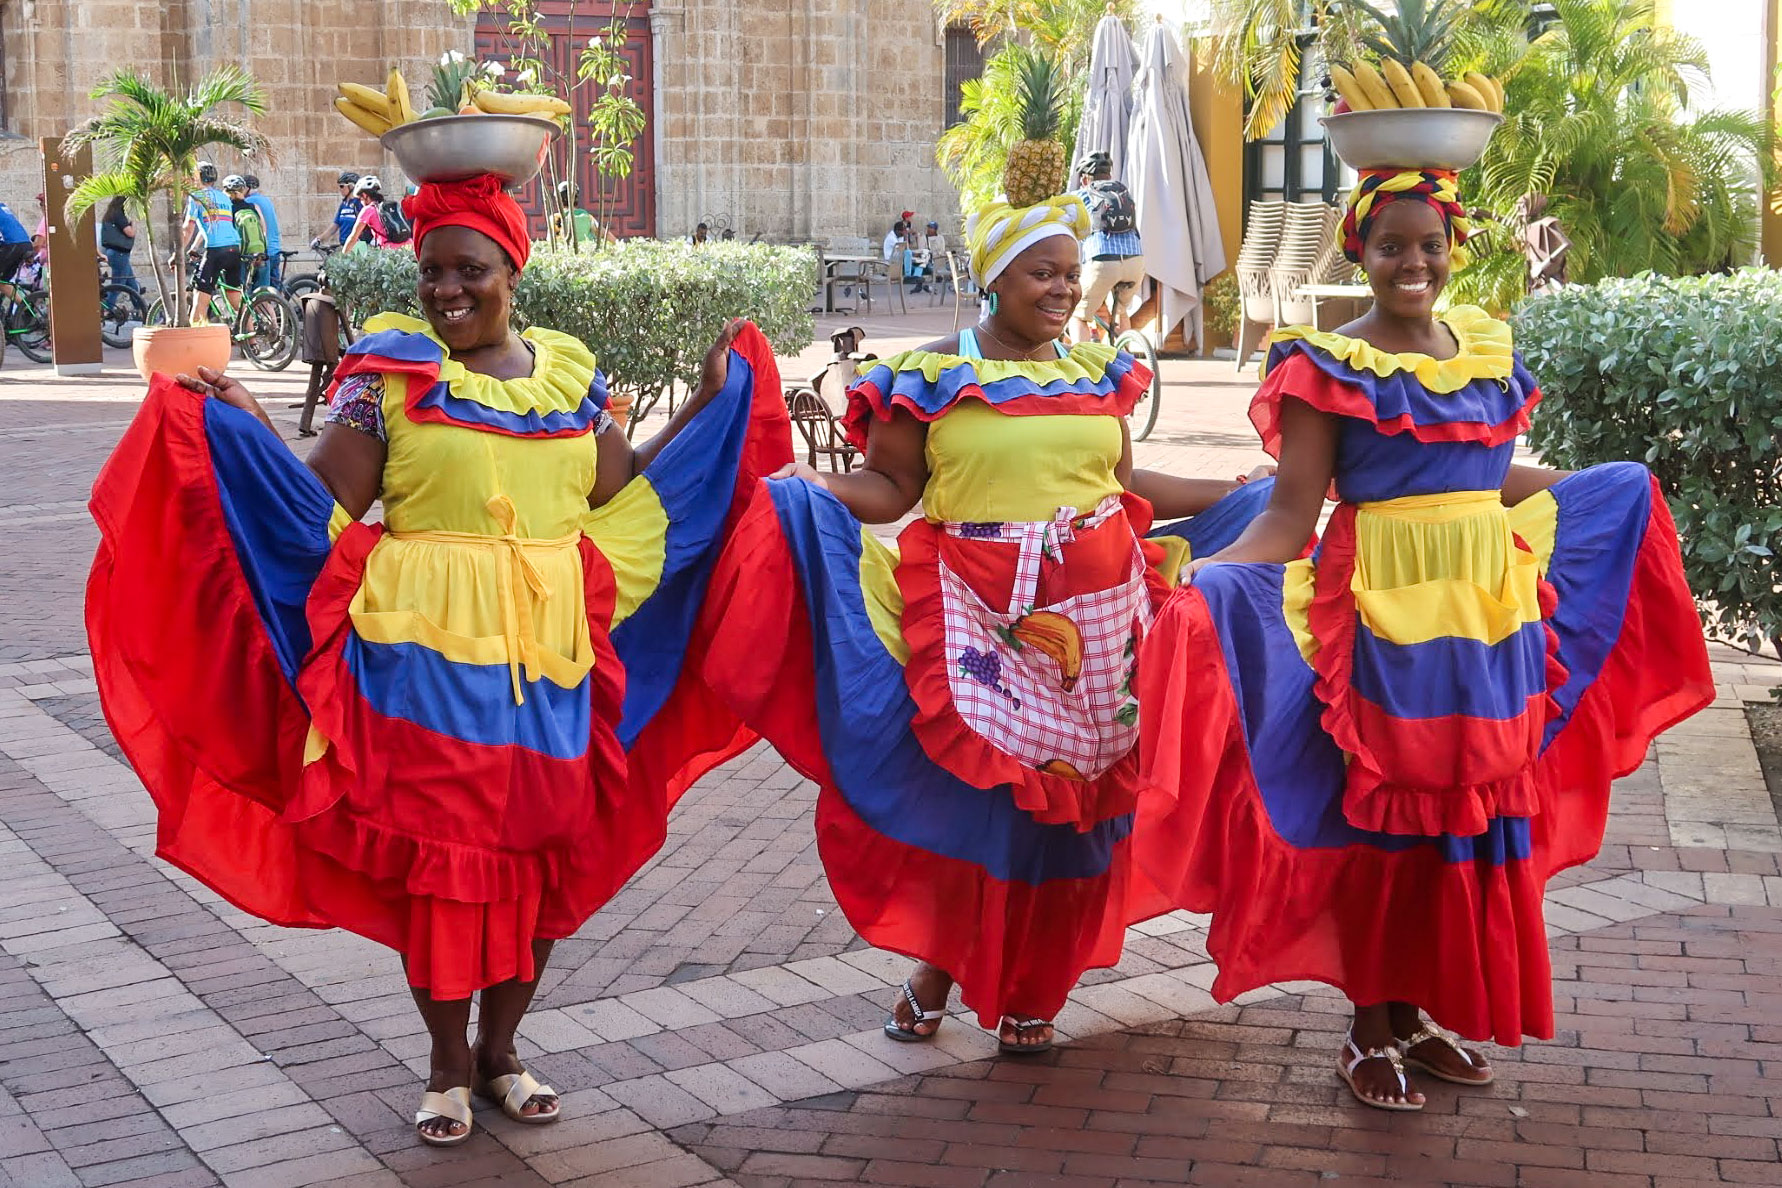 Kolumbianisch traditionell gekleidete Frauen am Tanzen